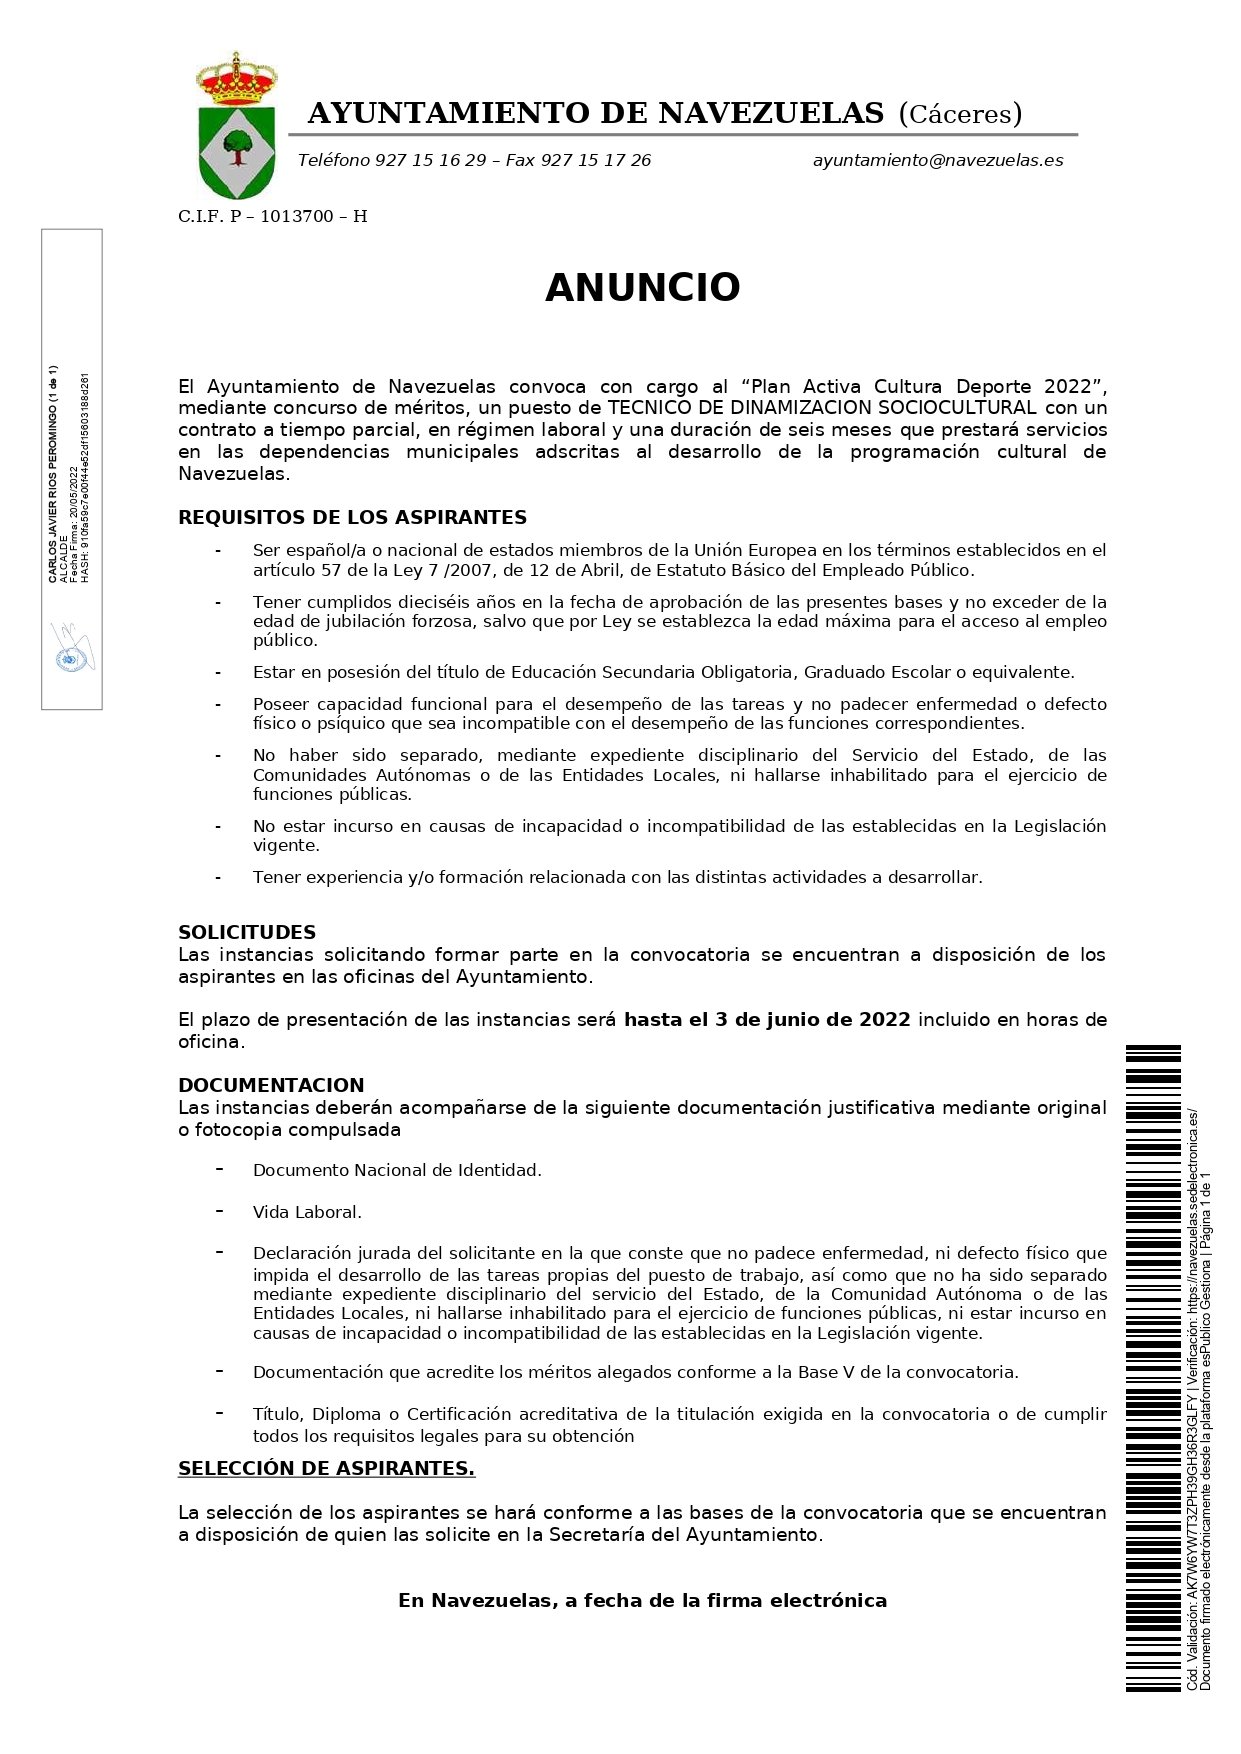 2 socorristas y 1 técnico de dinamización sociocultural (2022) - Navezuelas (Cáceres) 2